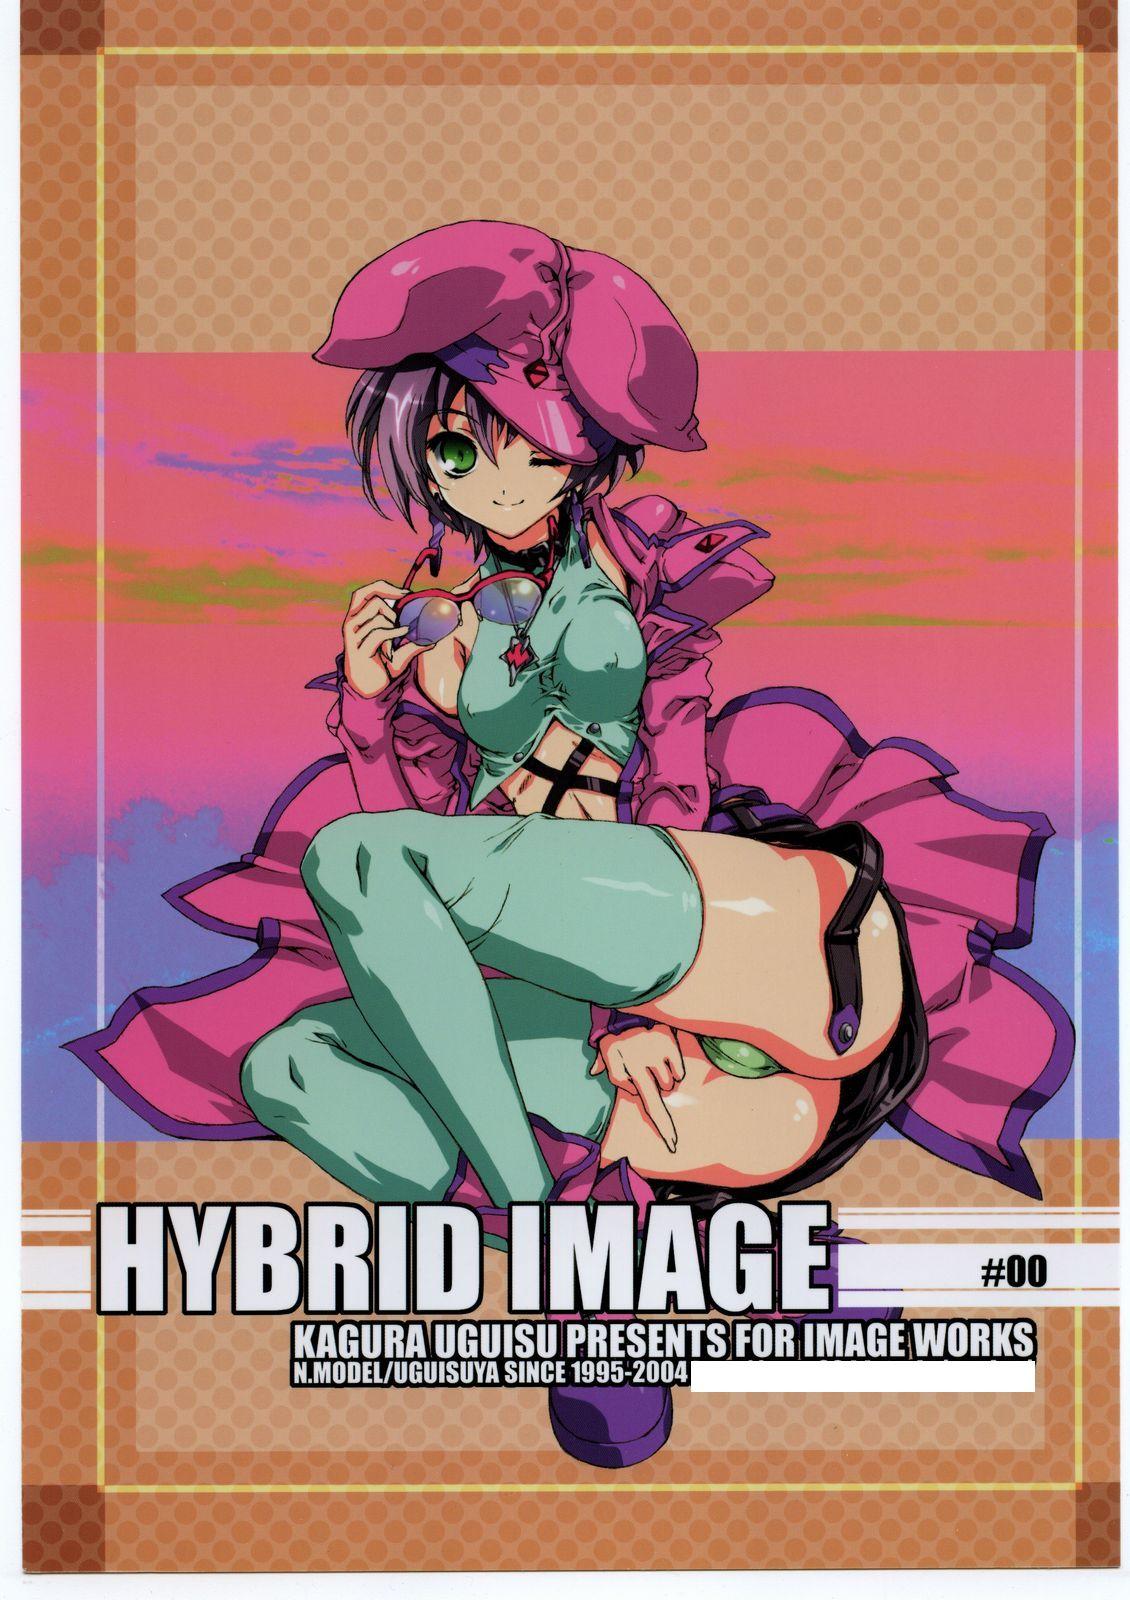 HYBRID IMAGE 0